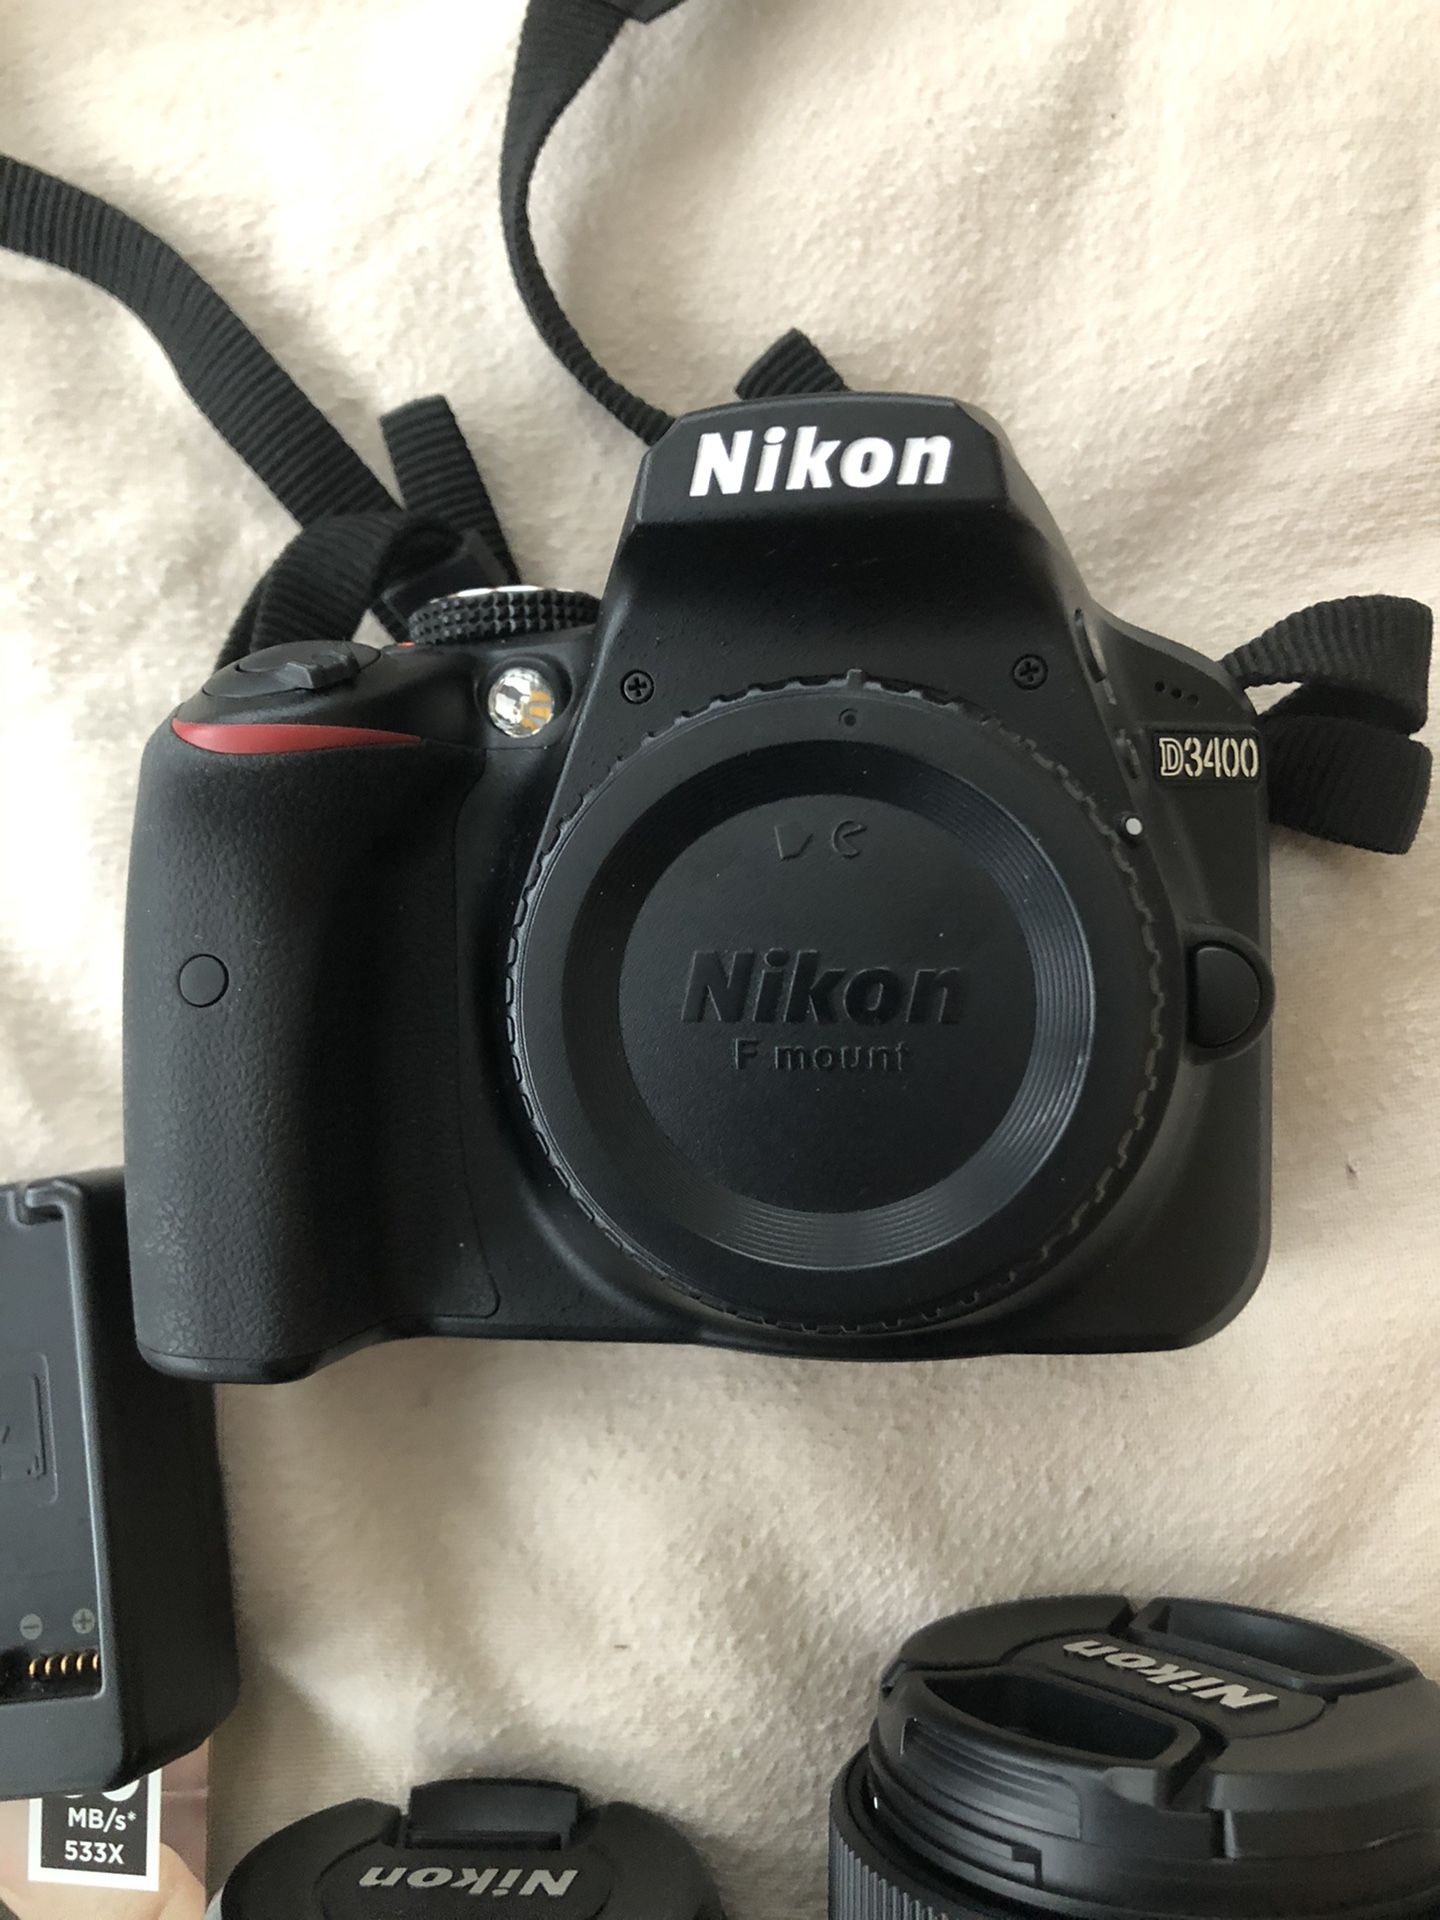 Nikon Camera D3400